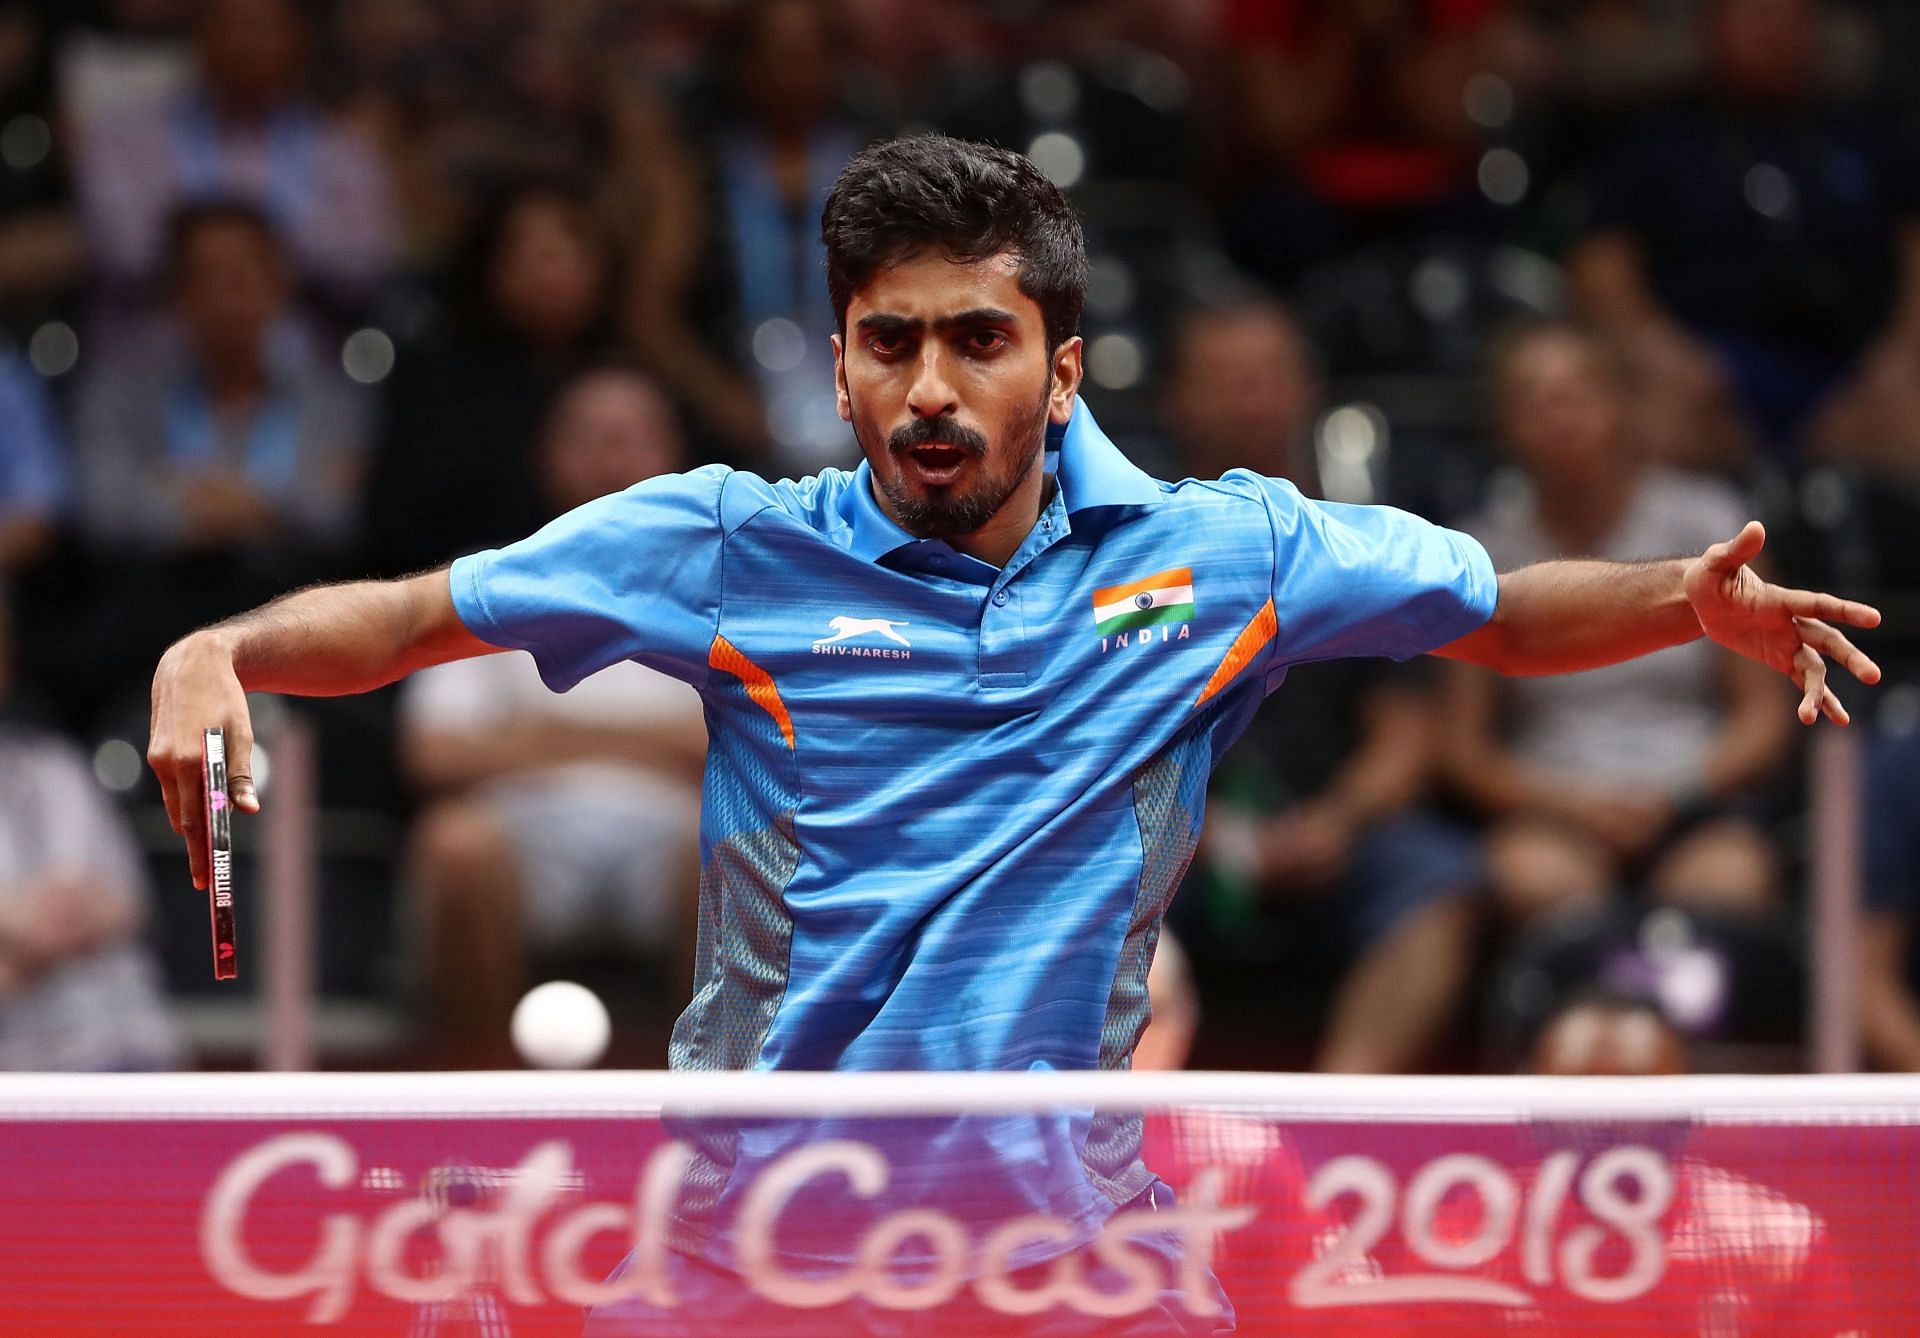 Gnansekaran Sathiyan progressed to next round of world table tennis championship.